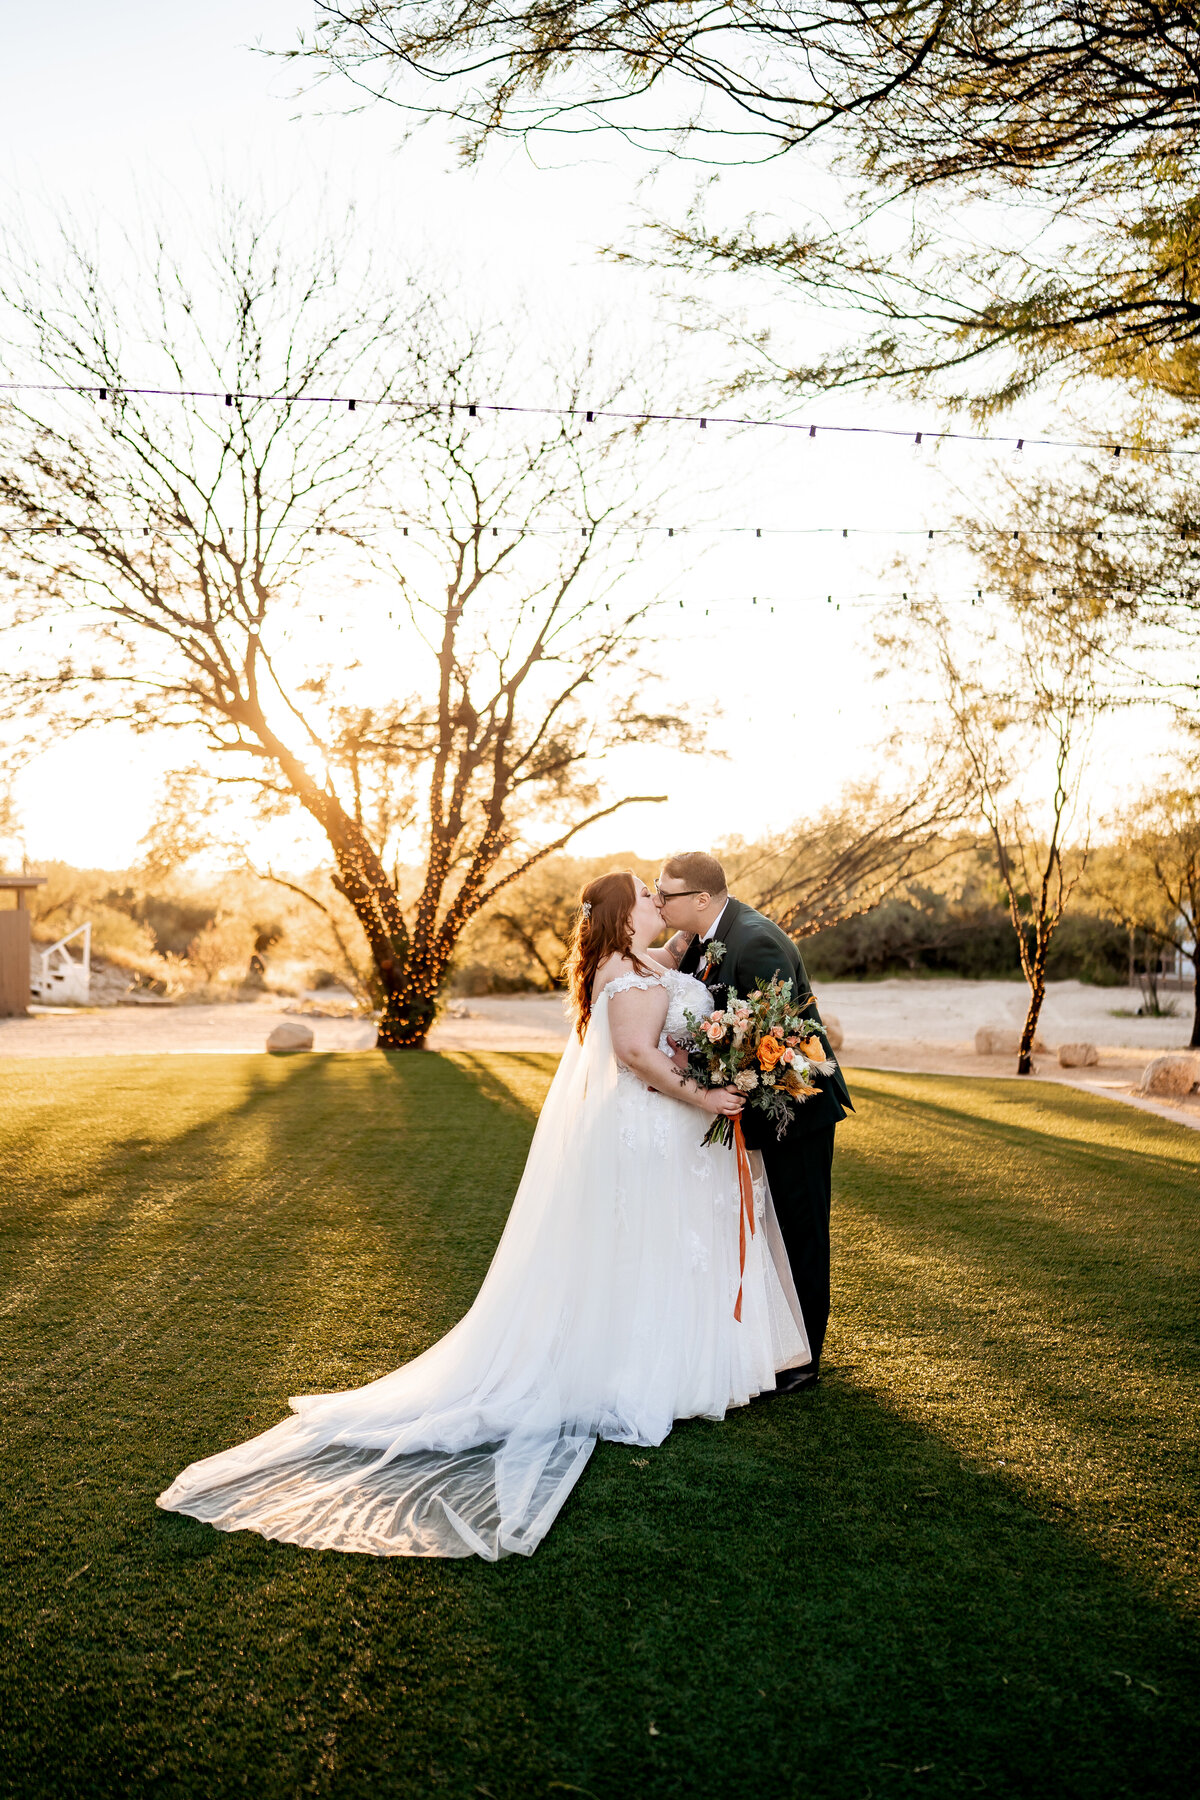 saguaro buttes wedding photos tucson arizona (4)